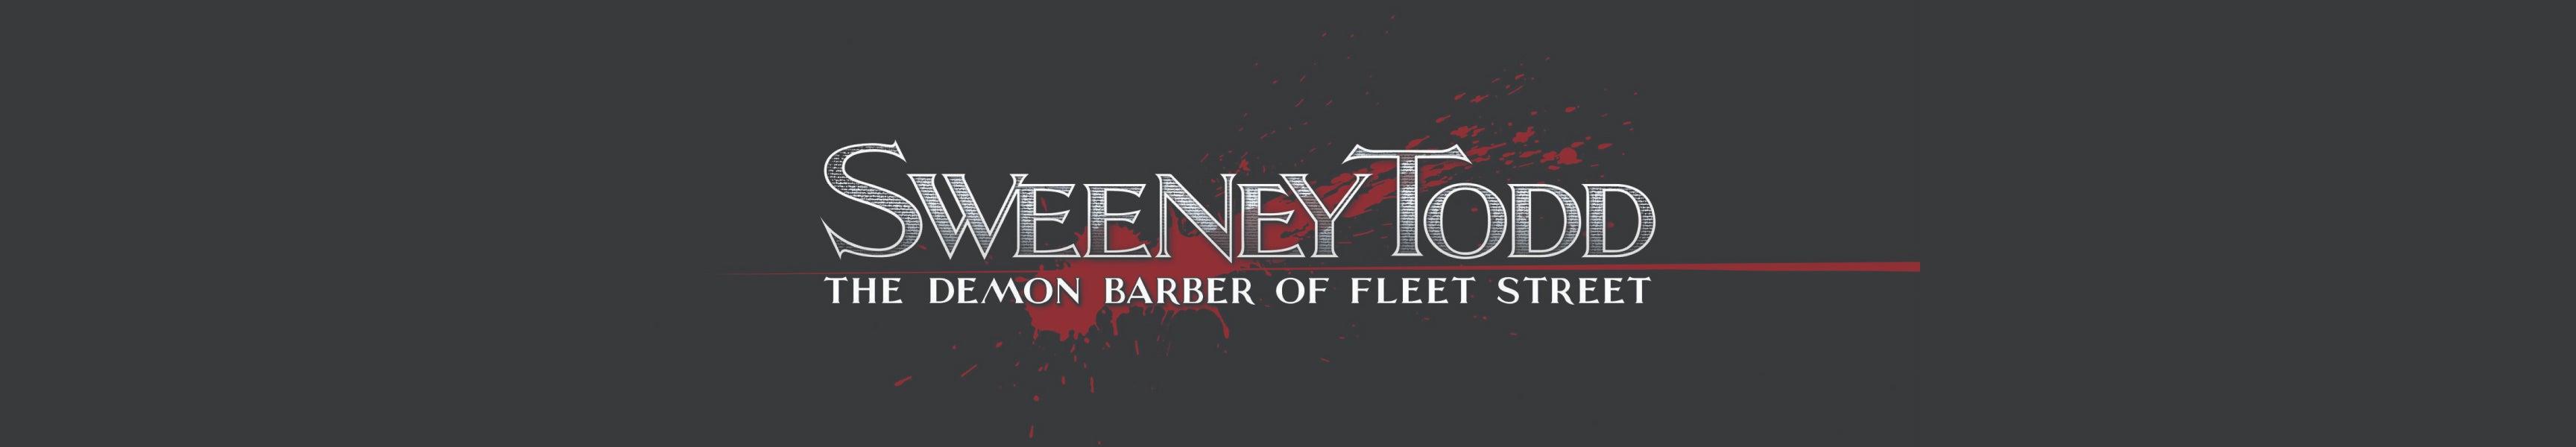 Sweeney Todd: El barbero diabólico de Fleet Street